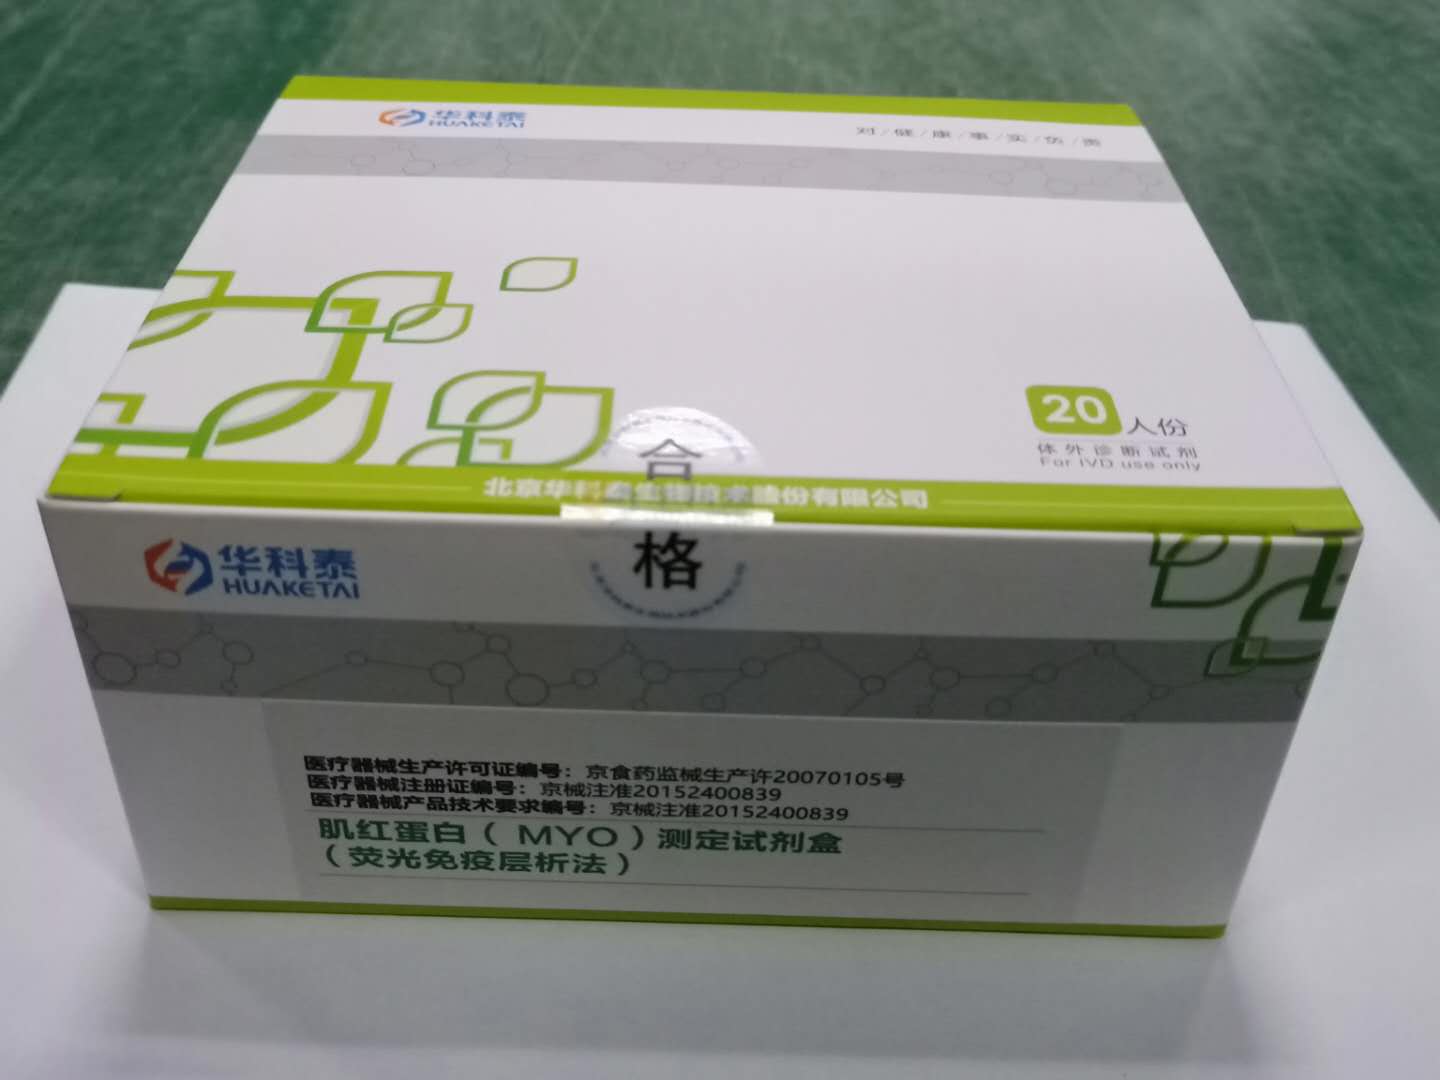 【华科泰】肌红蛋白（MYO)测定试剂盒（荧光免疫层析法）